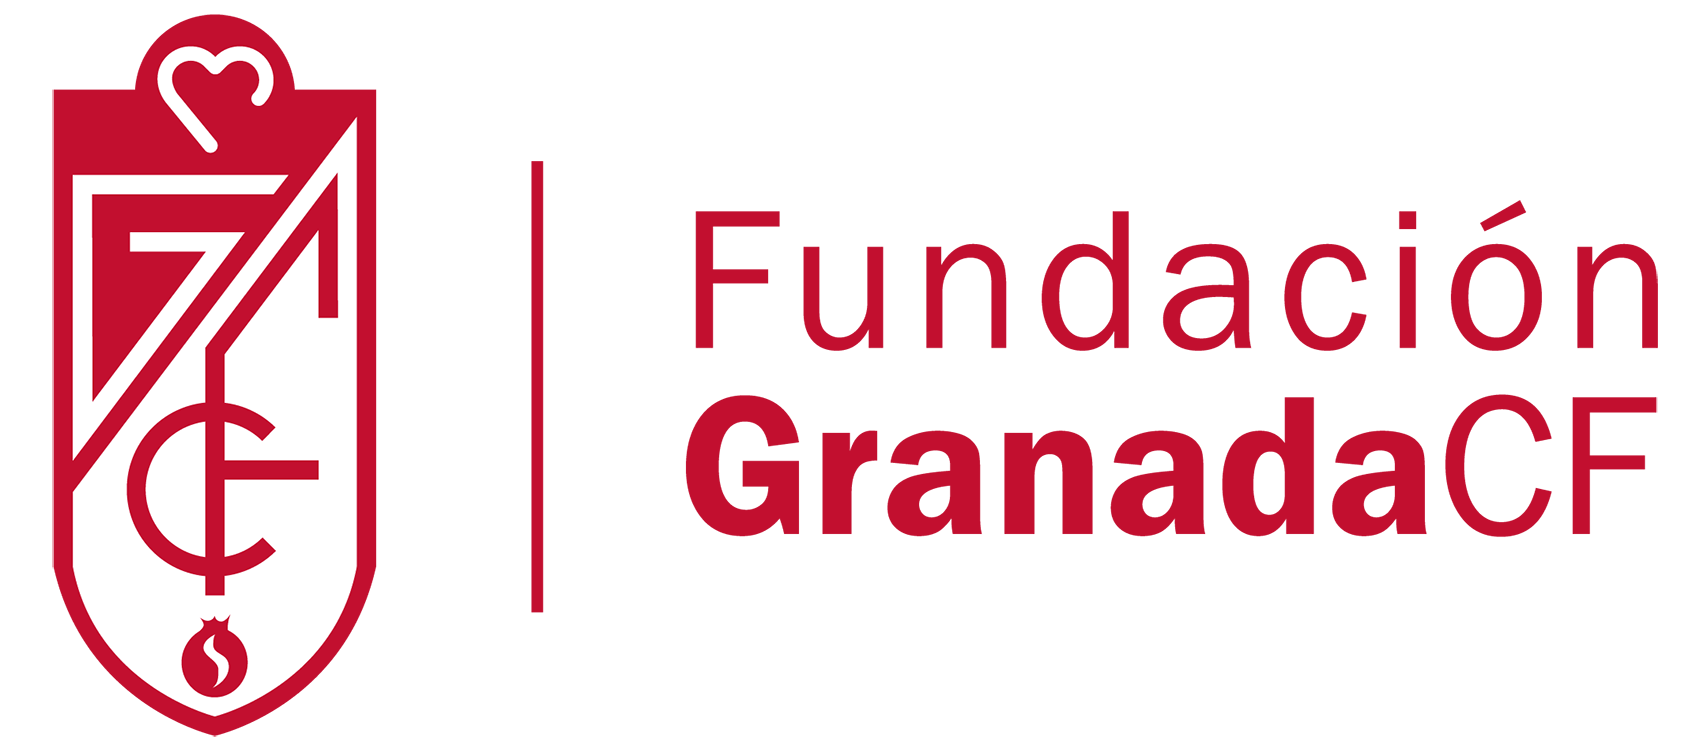 Fundación GCF 1931